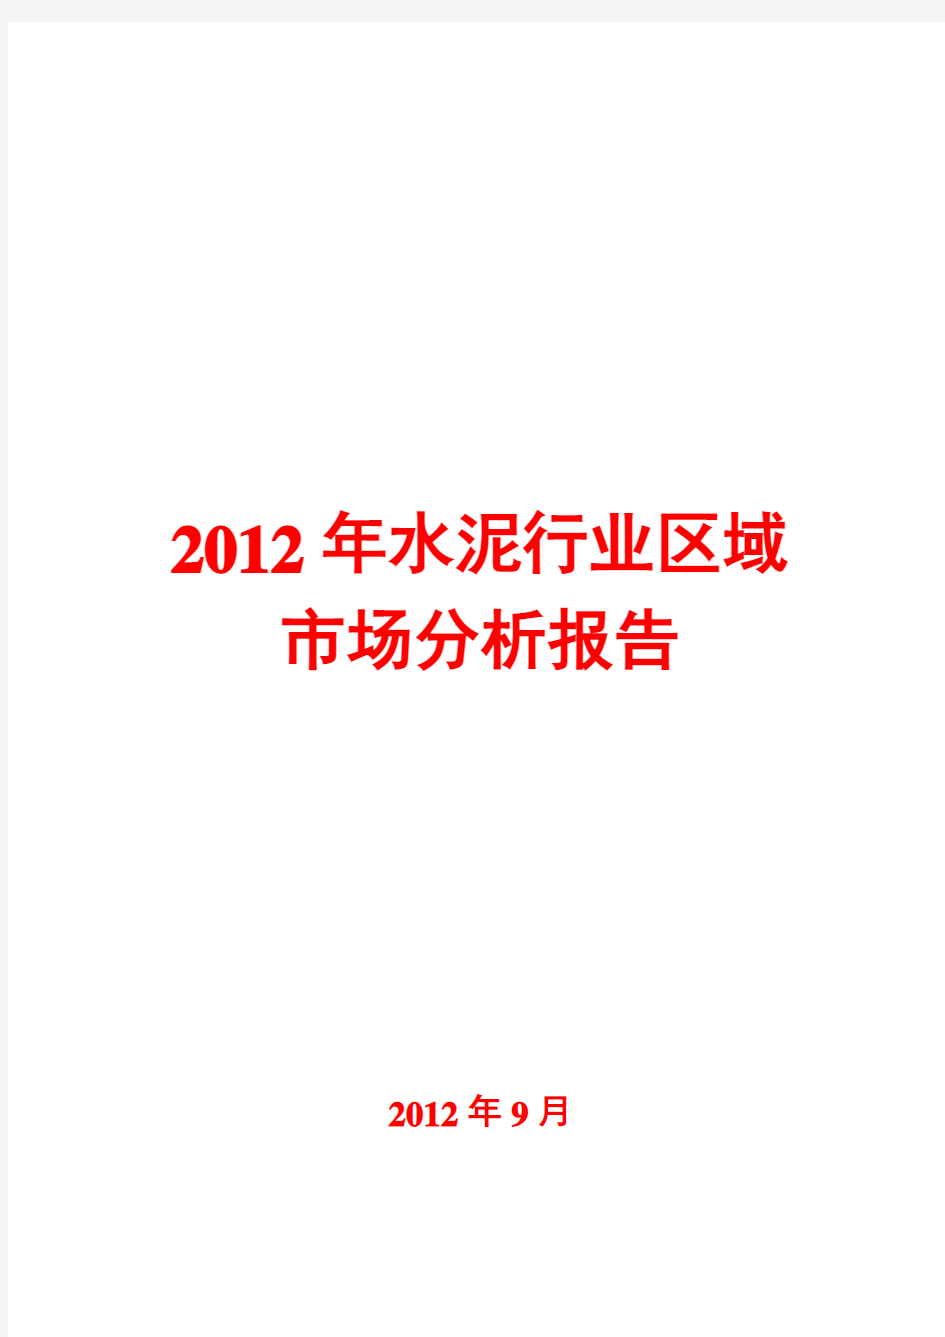 水泥行业区域市场分析报告2012